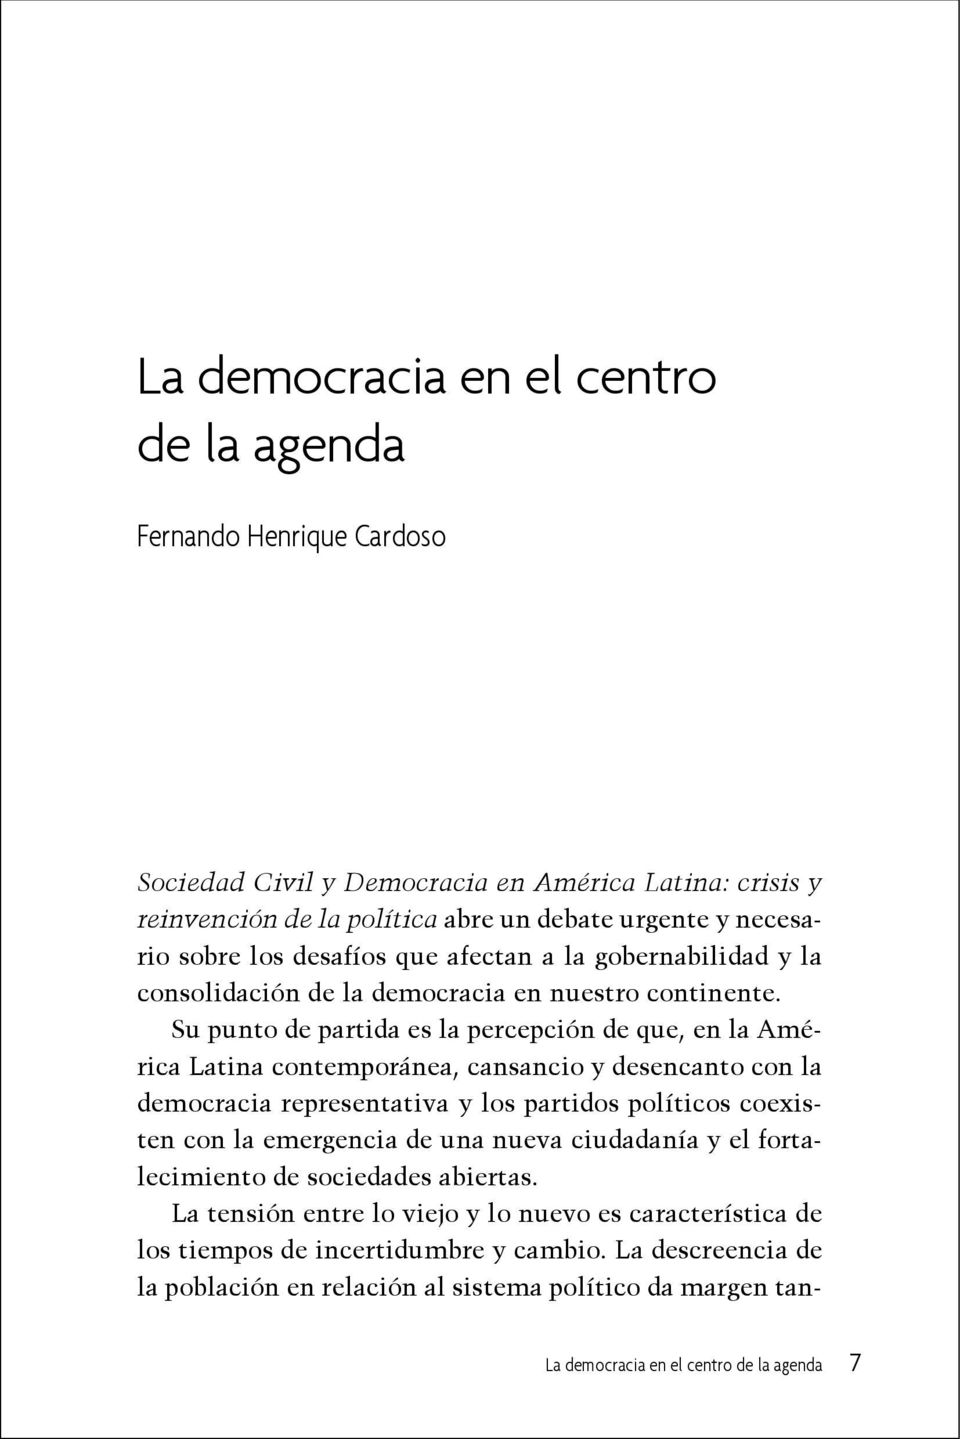 Su punto de partida es la percepción de que, en la América Latina contemporánea, cansancio y desencanto con la democracia representativa y los partidos políticos coexisten con la emergencia de